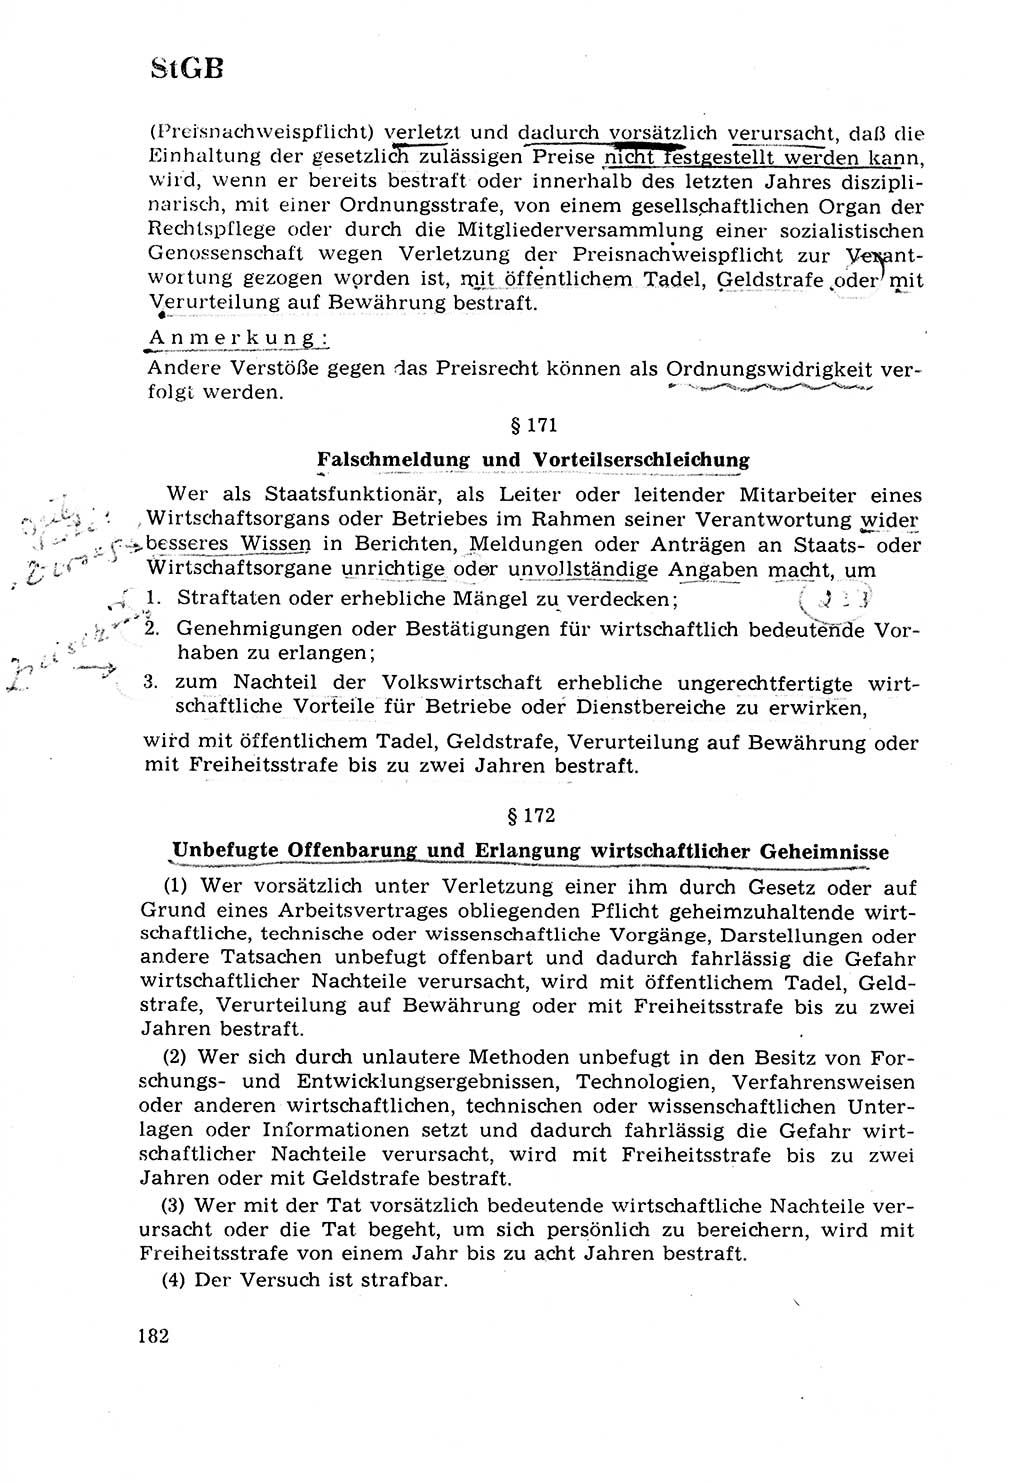 Strafrecht [Deutsche Demokratische Republik (DDR)] 1968, Seite 182 (Strafr. DDR 1968, S. 182)